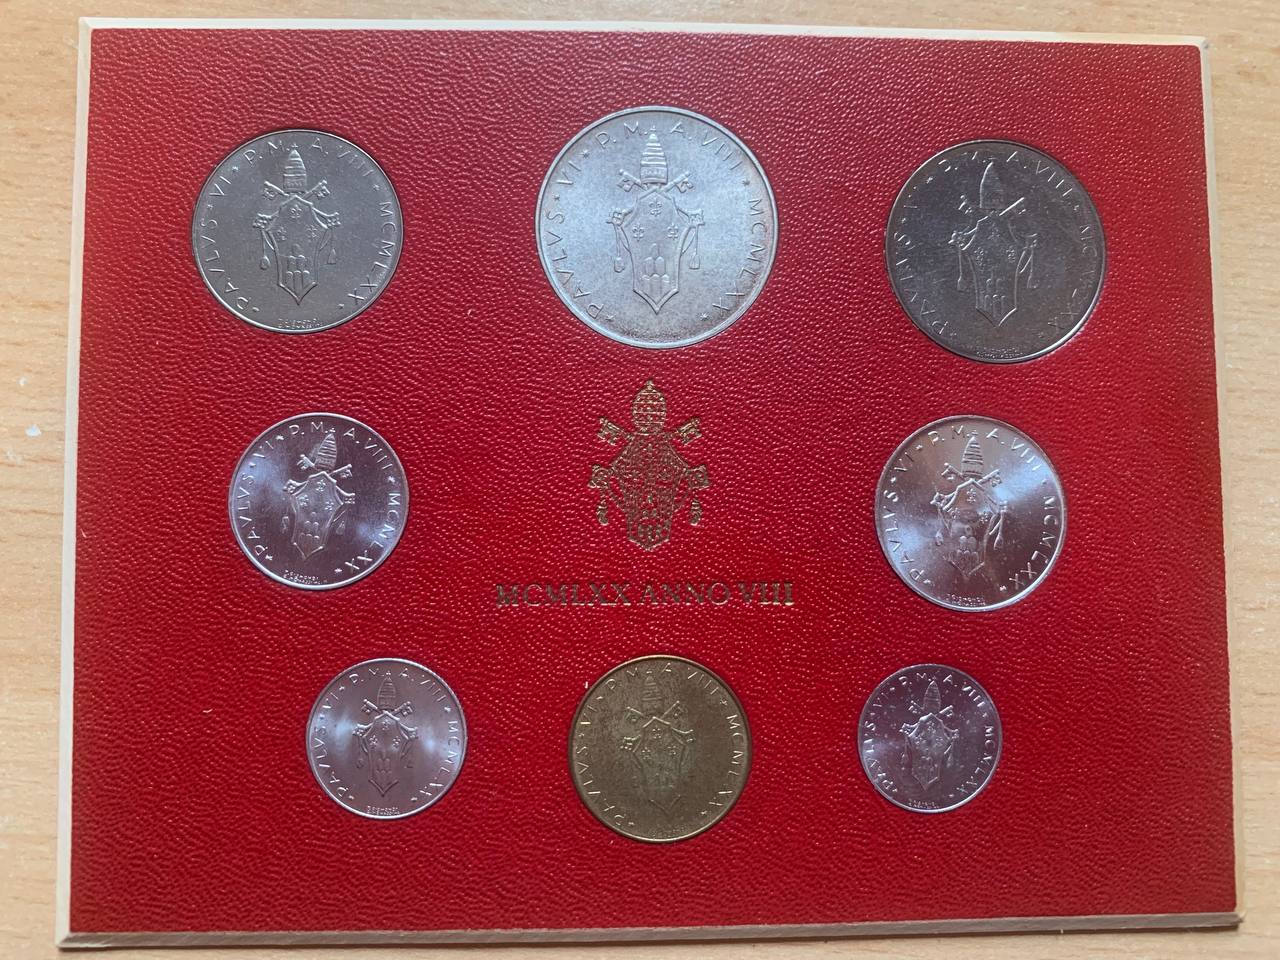  Jahresset von Vatikan 1970 BU (8 Münzen)   